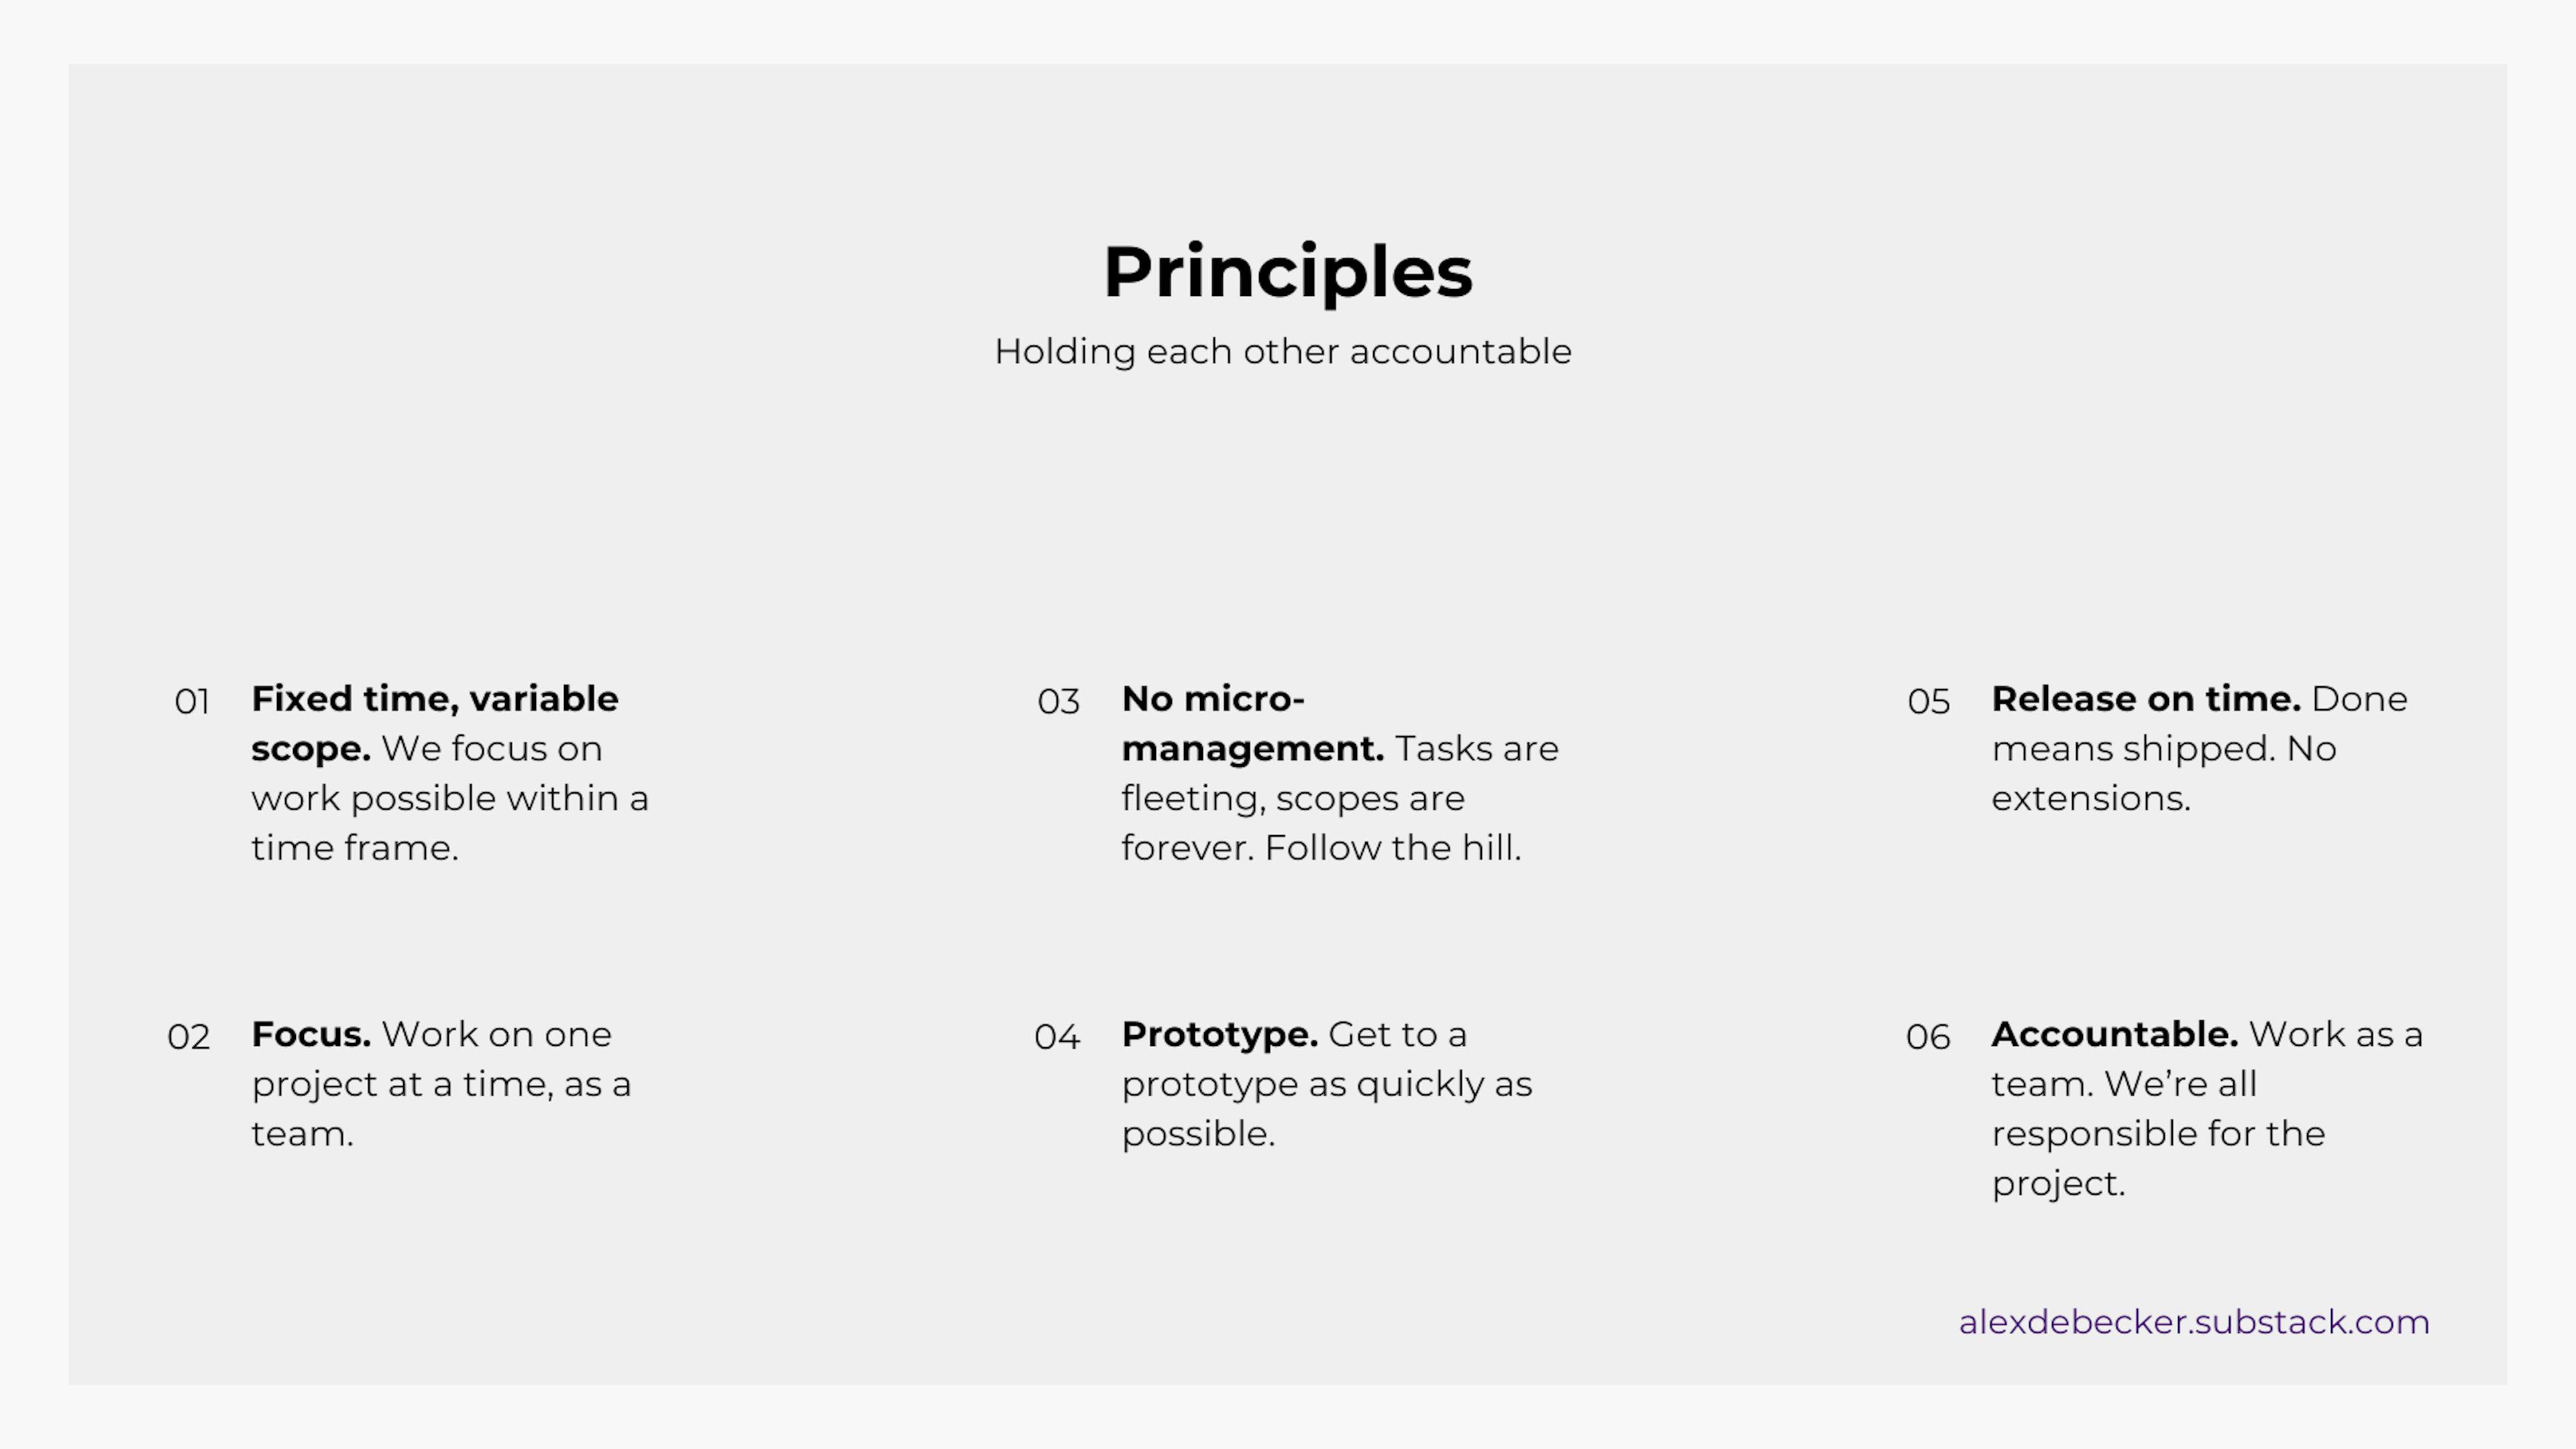 Diapositiva 12 de mi presentación interna: Principios